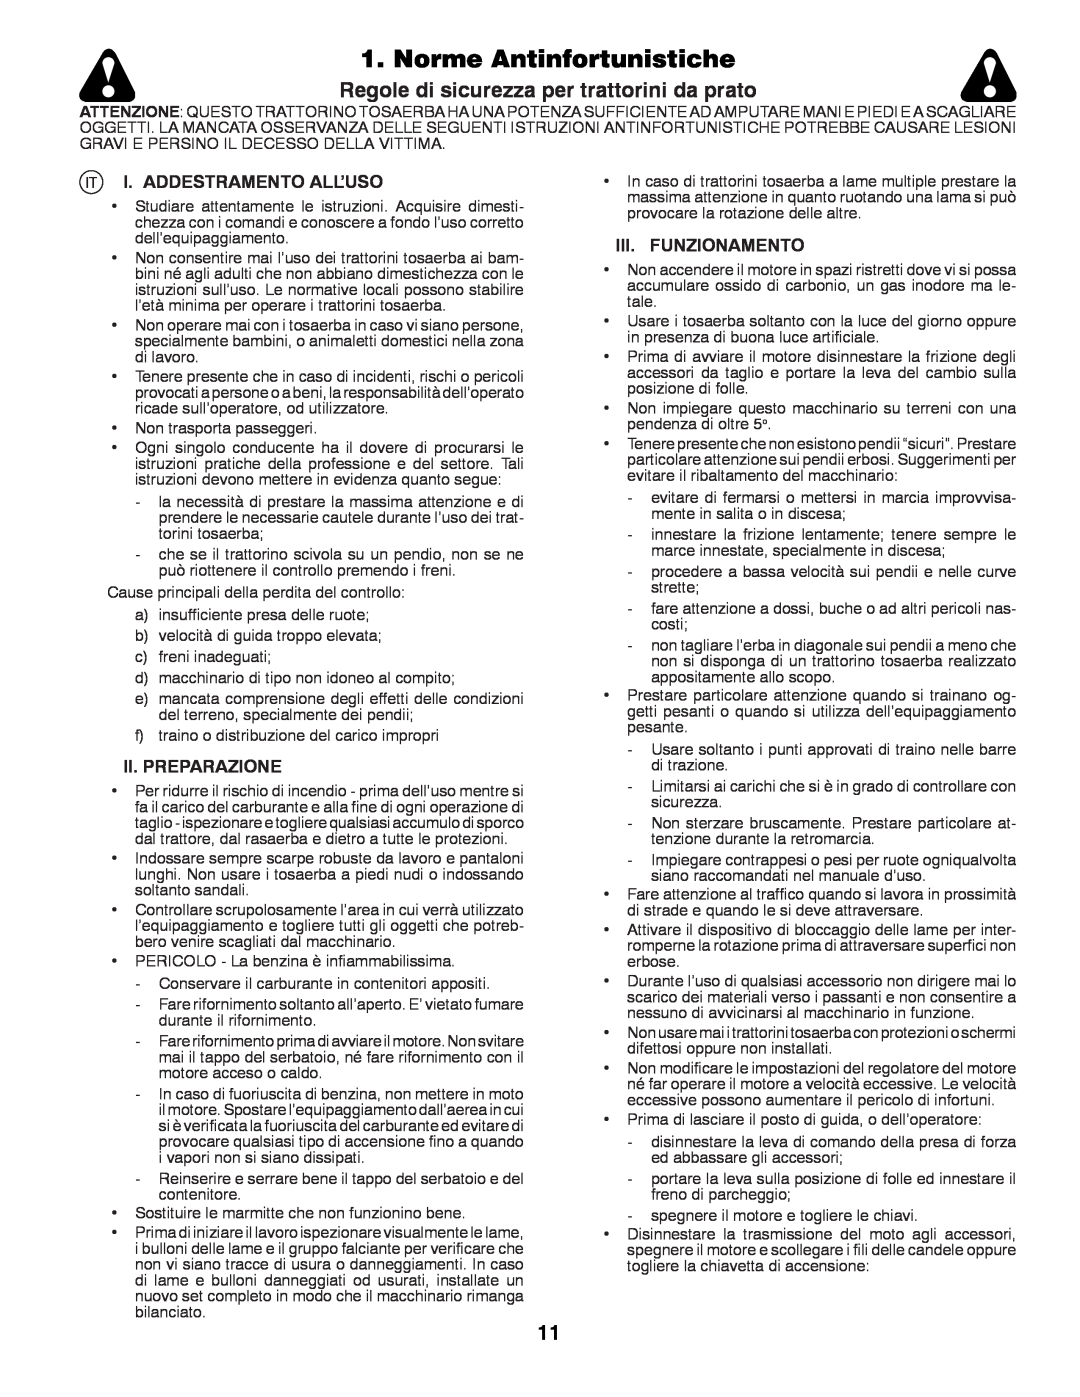 Husqvarna LT131 Norme Antinfortunistiche, Regole di sicurezza per trattorini da prato, I. Addestramento All’Uso 